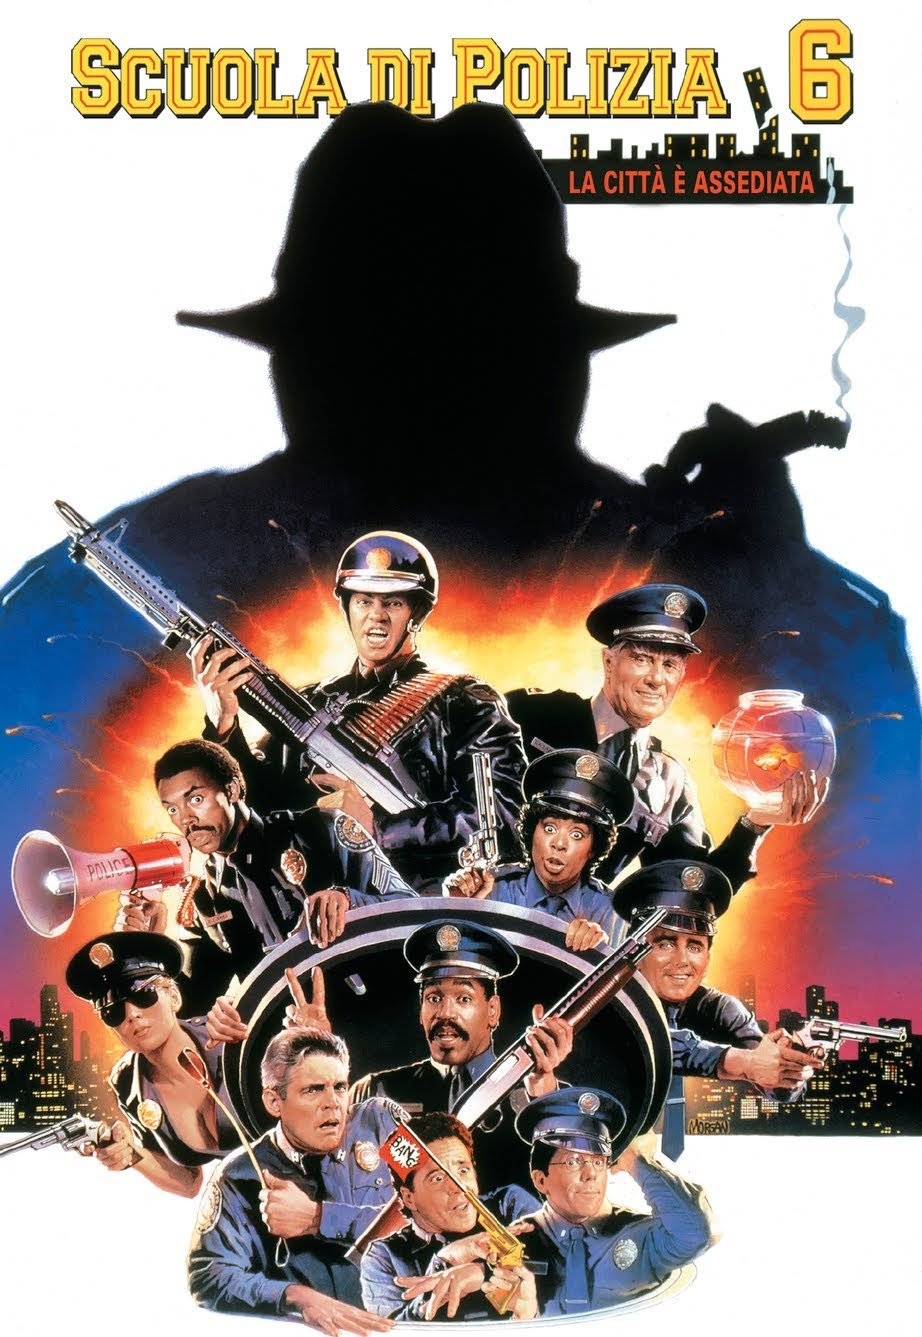 Scuola di polizia 6 – La città assediata [HD] (1989)